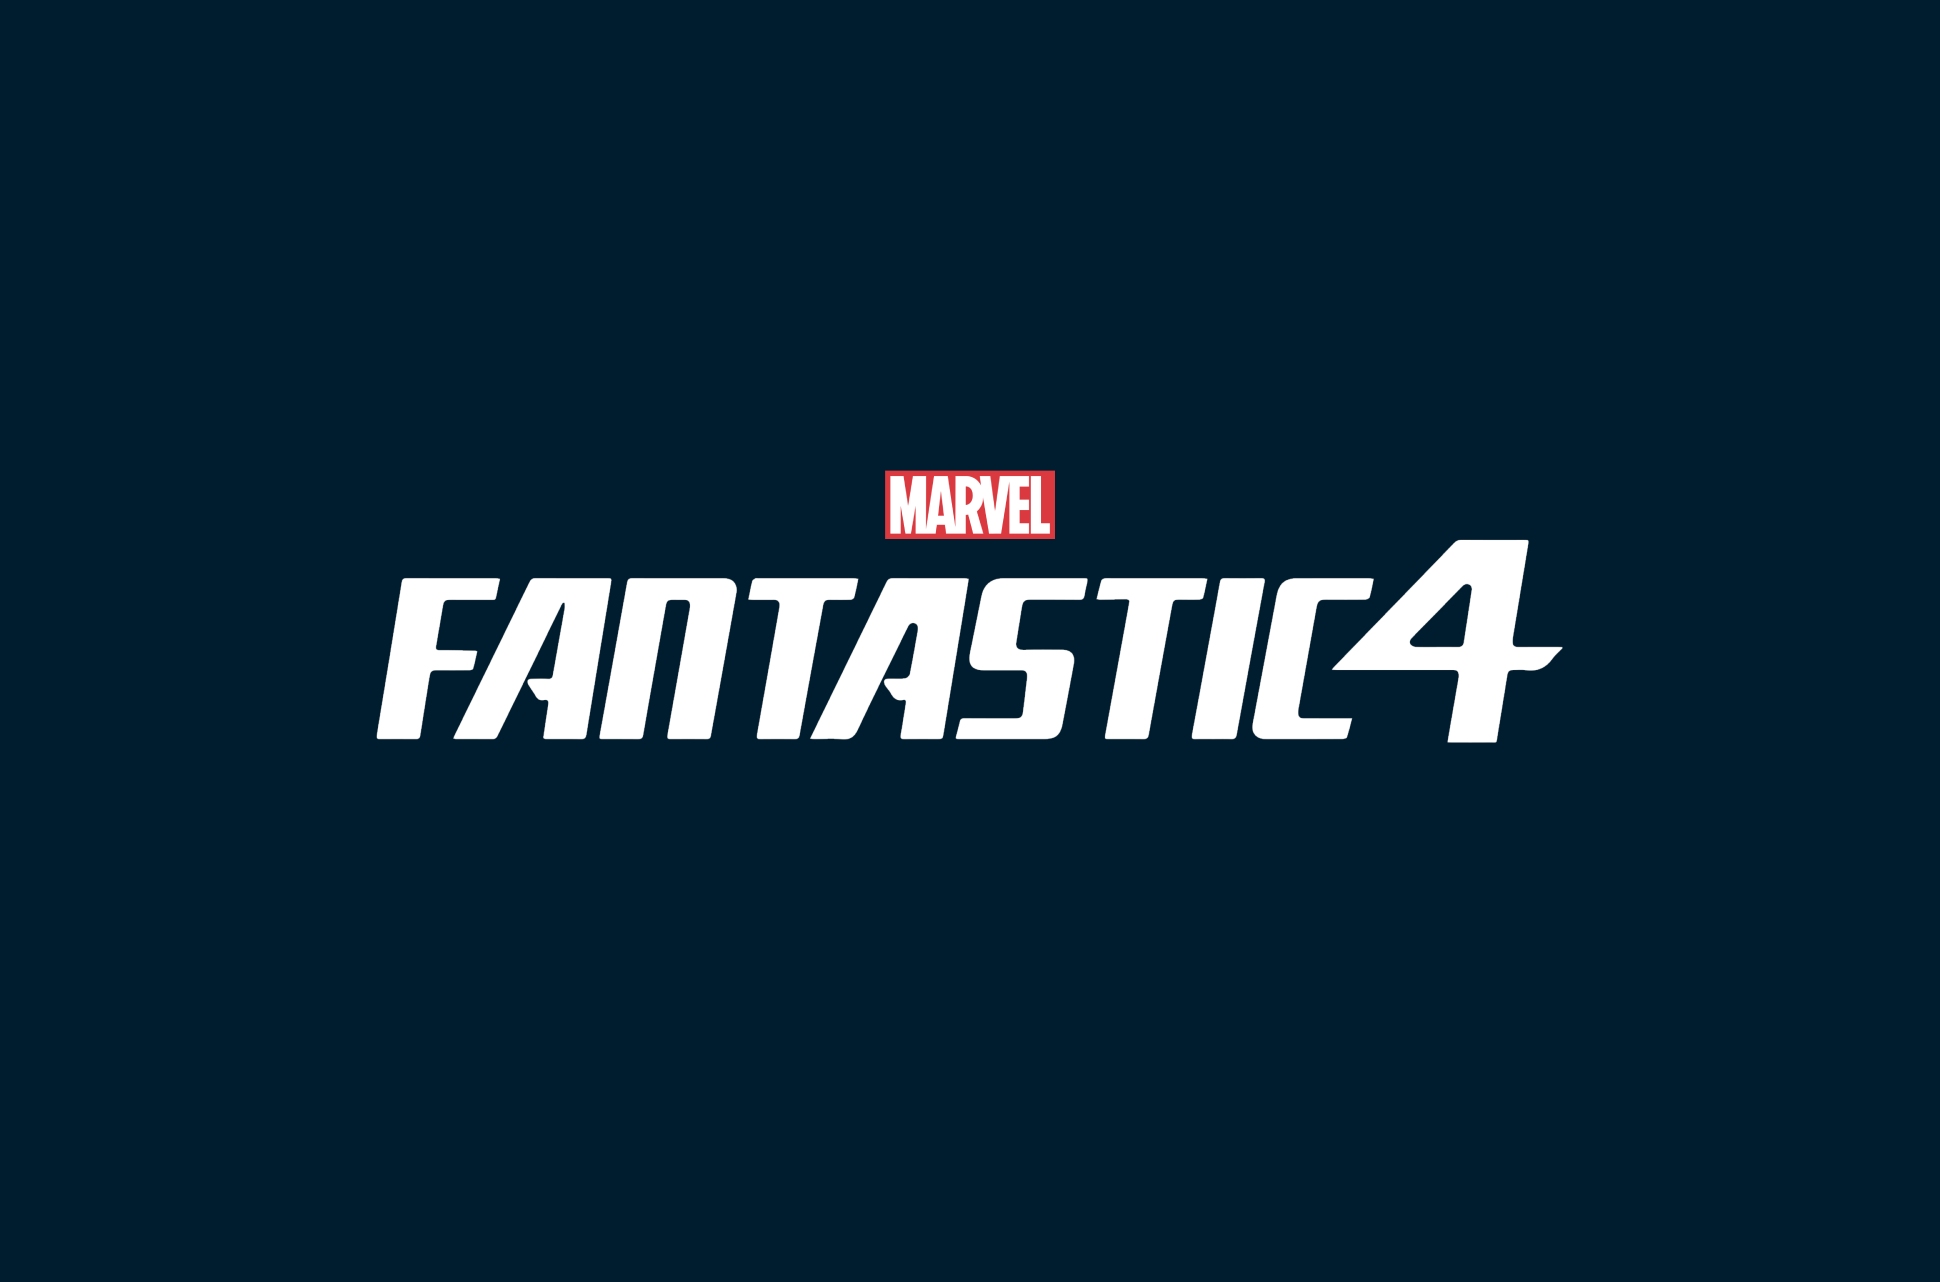 Marvel/Fox Fantastic 4 films.